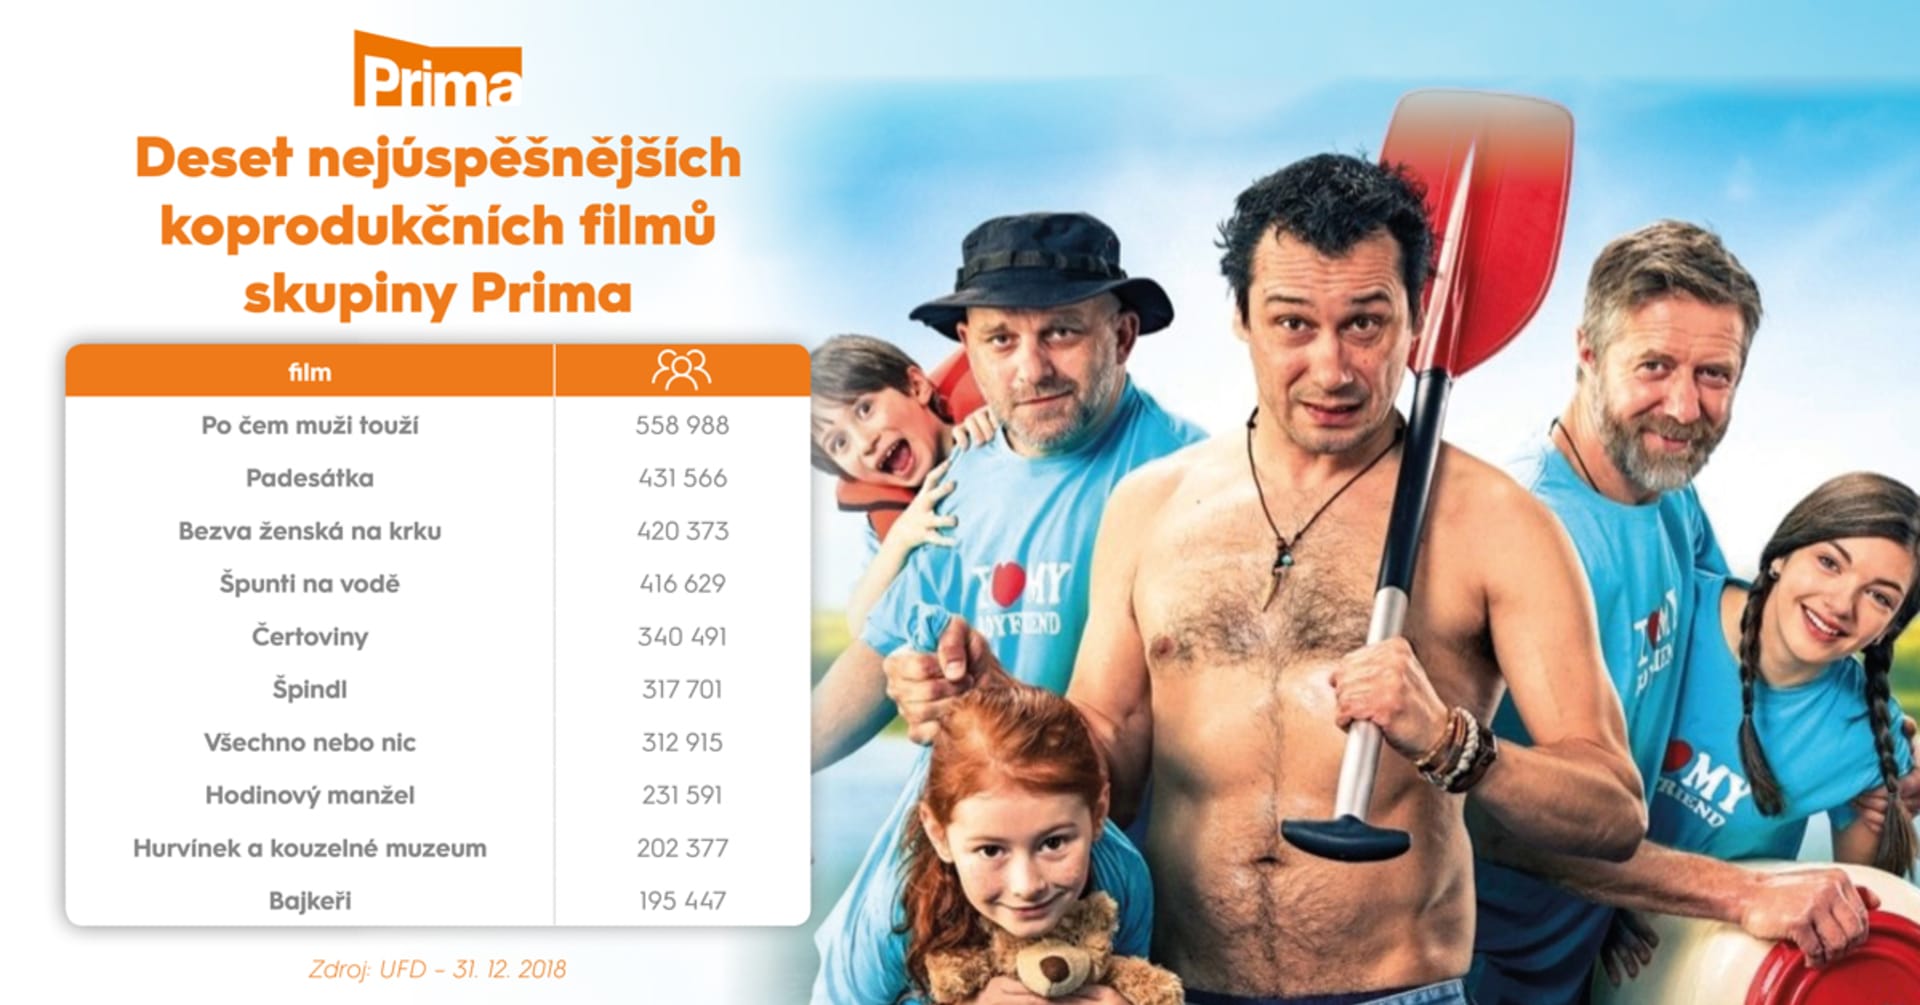 Skupina Prima byla loni koproducentem čtyř z deseti nejnavštěvovanějších českých filmů 2